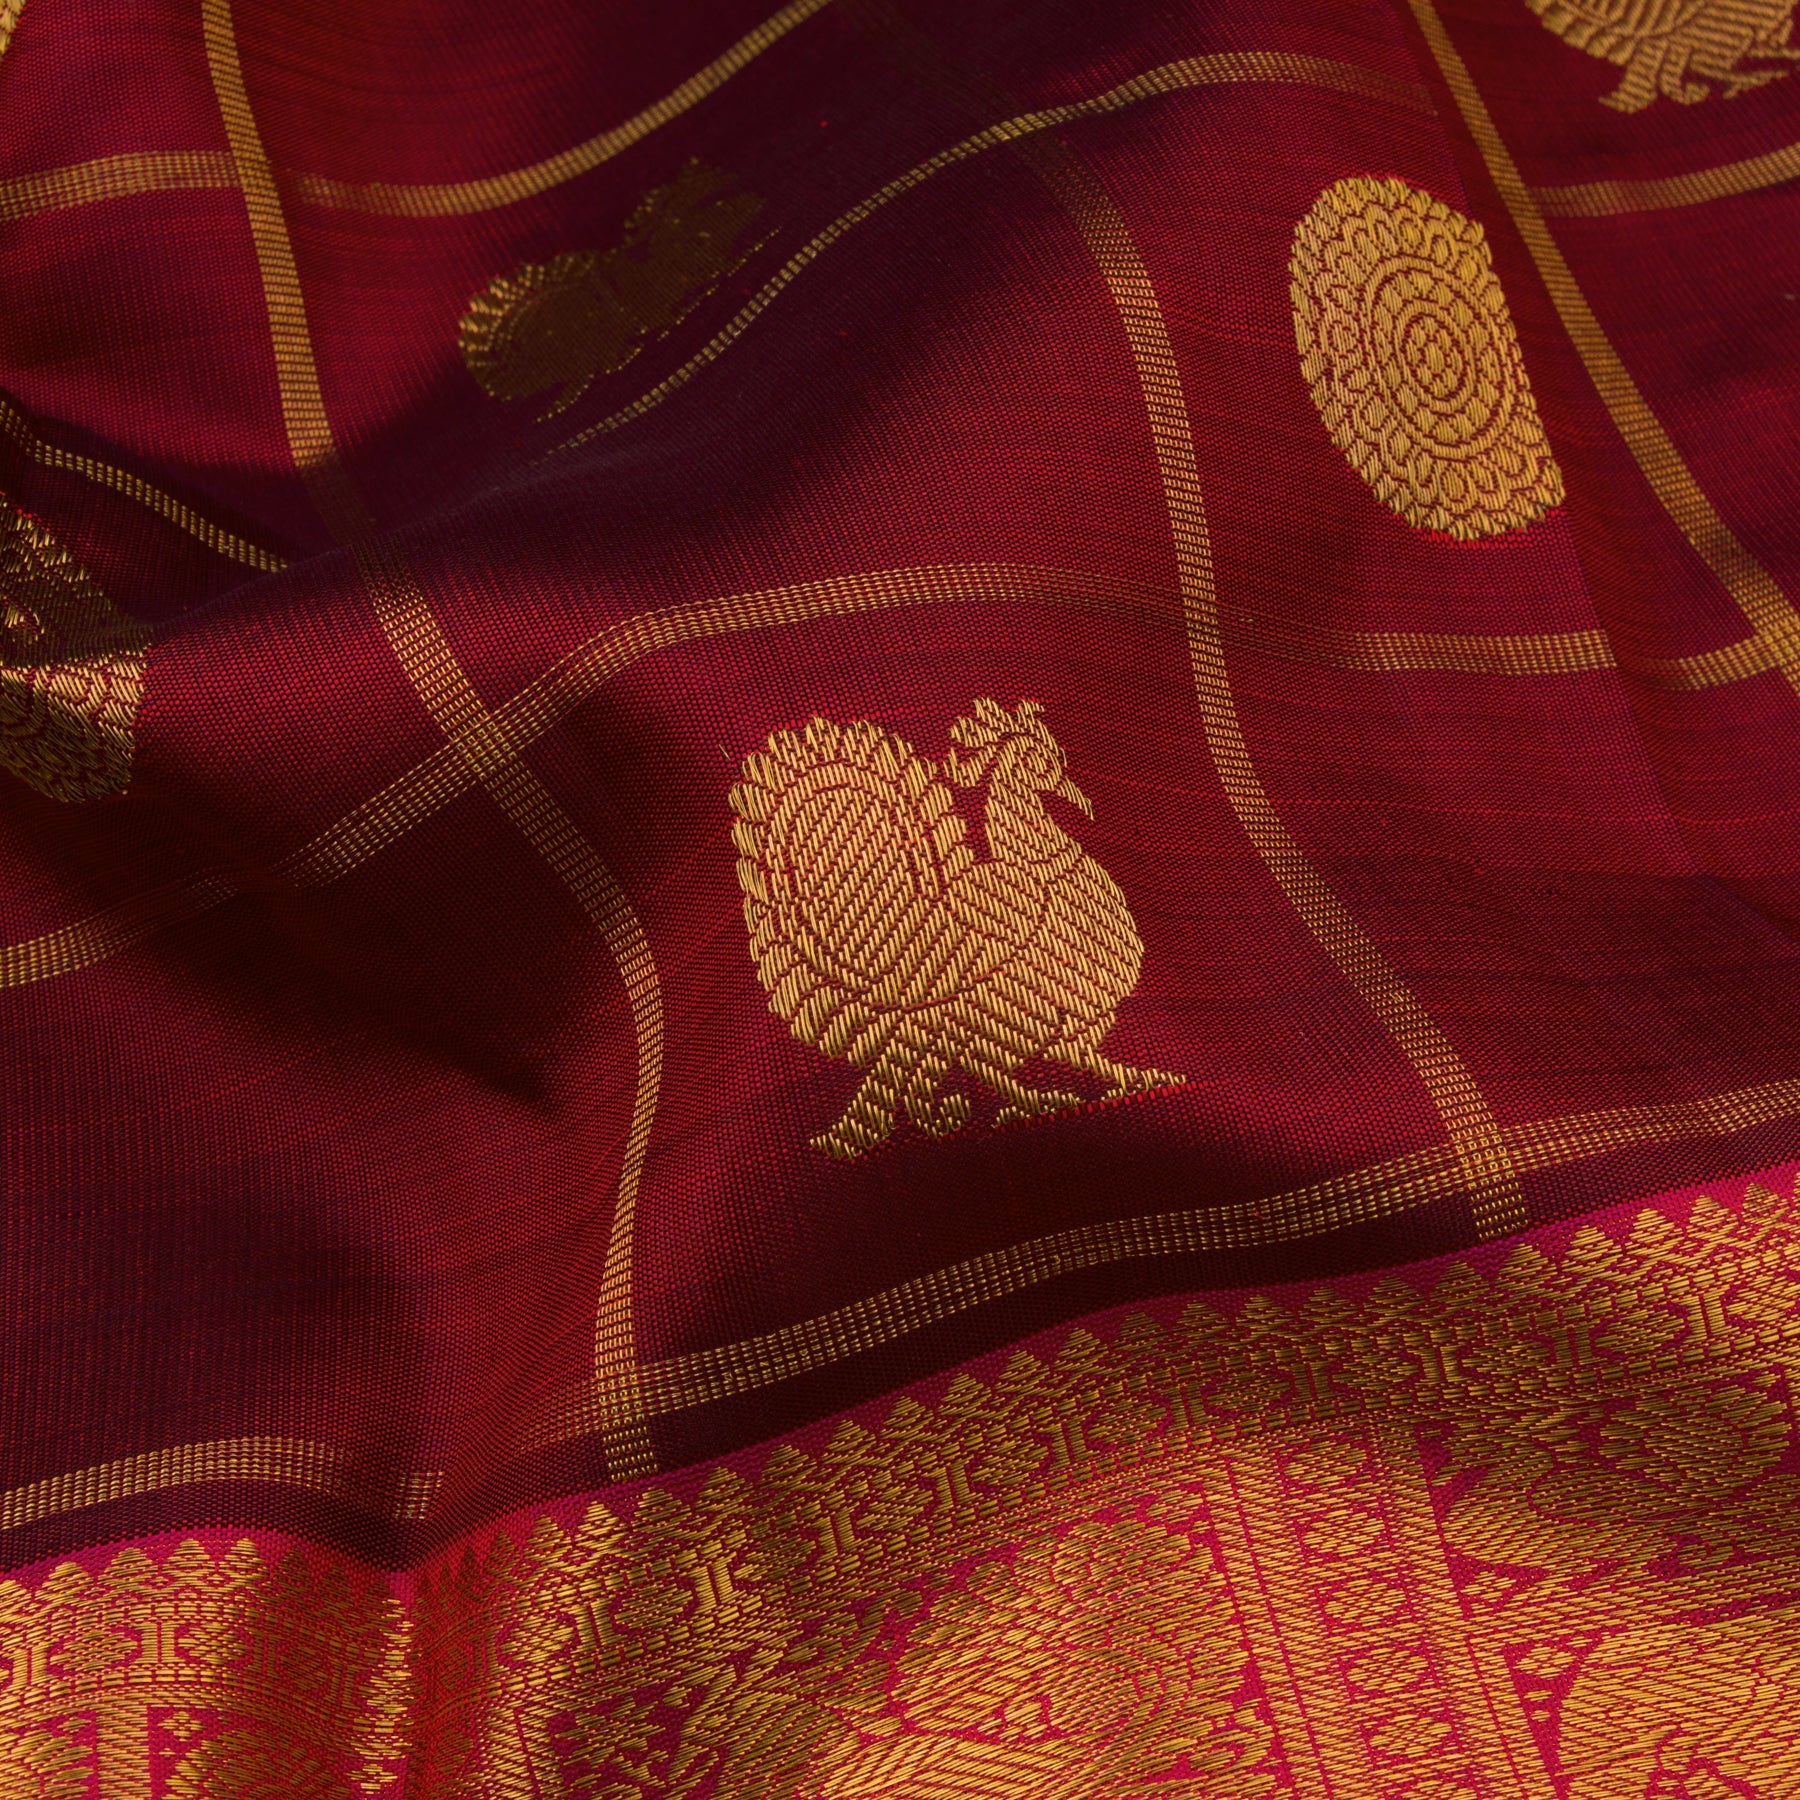 Kanakavalli Kanjivaram Silk Sari 22-599-HS001-11238 - Fabric View